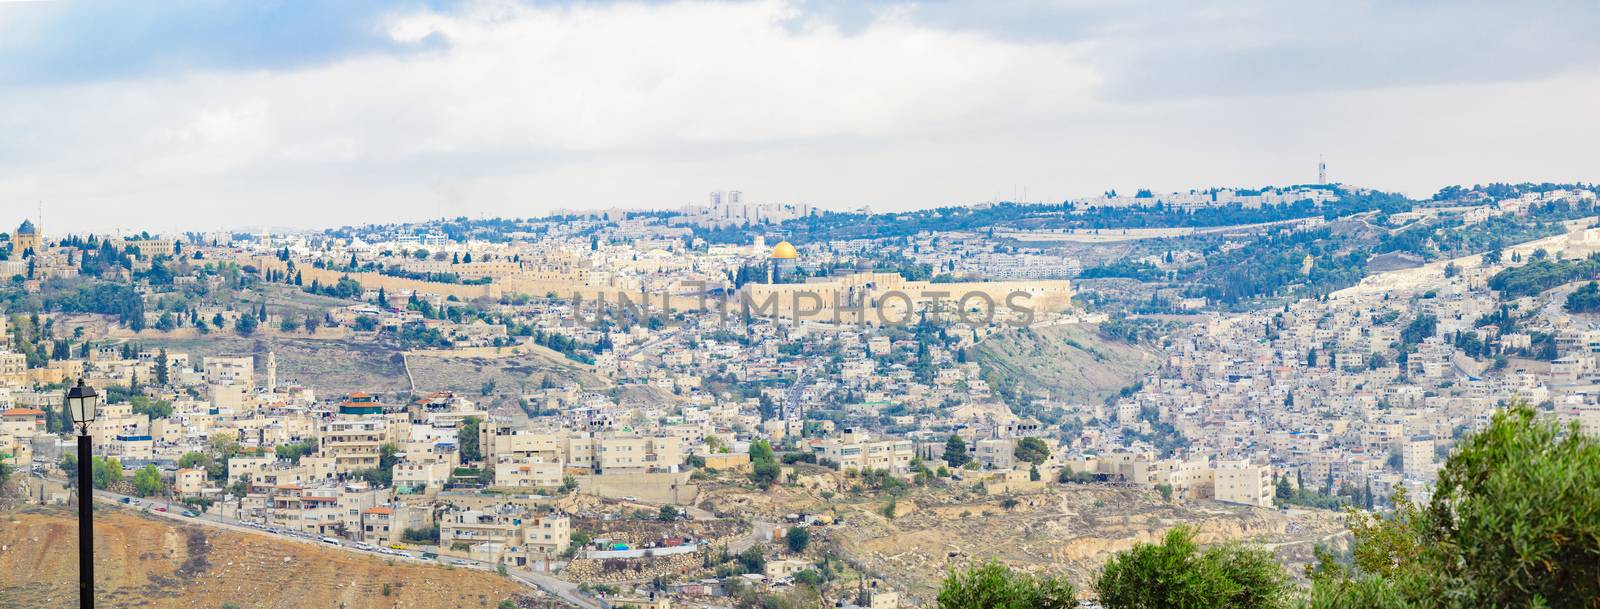 The Old City of Jerusalem by RnDmS